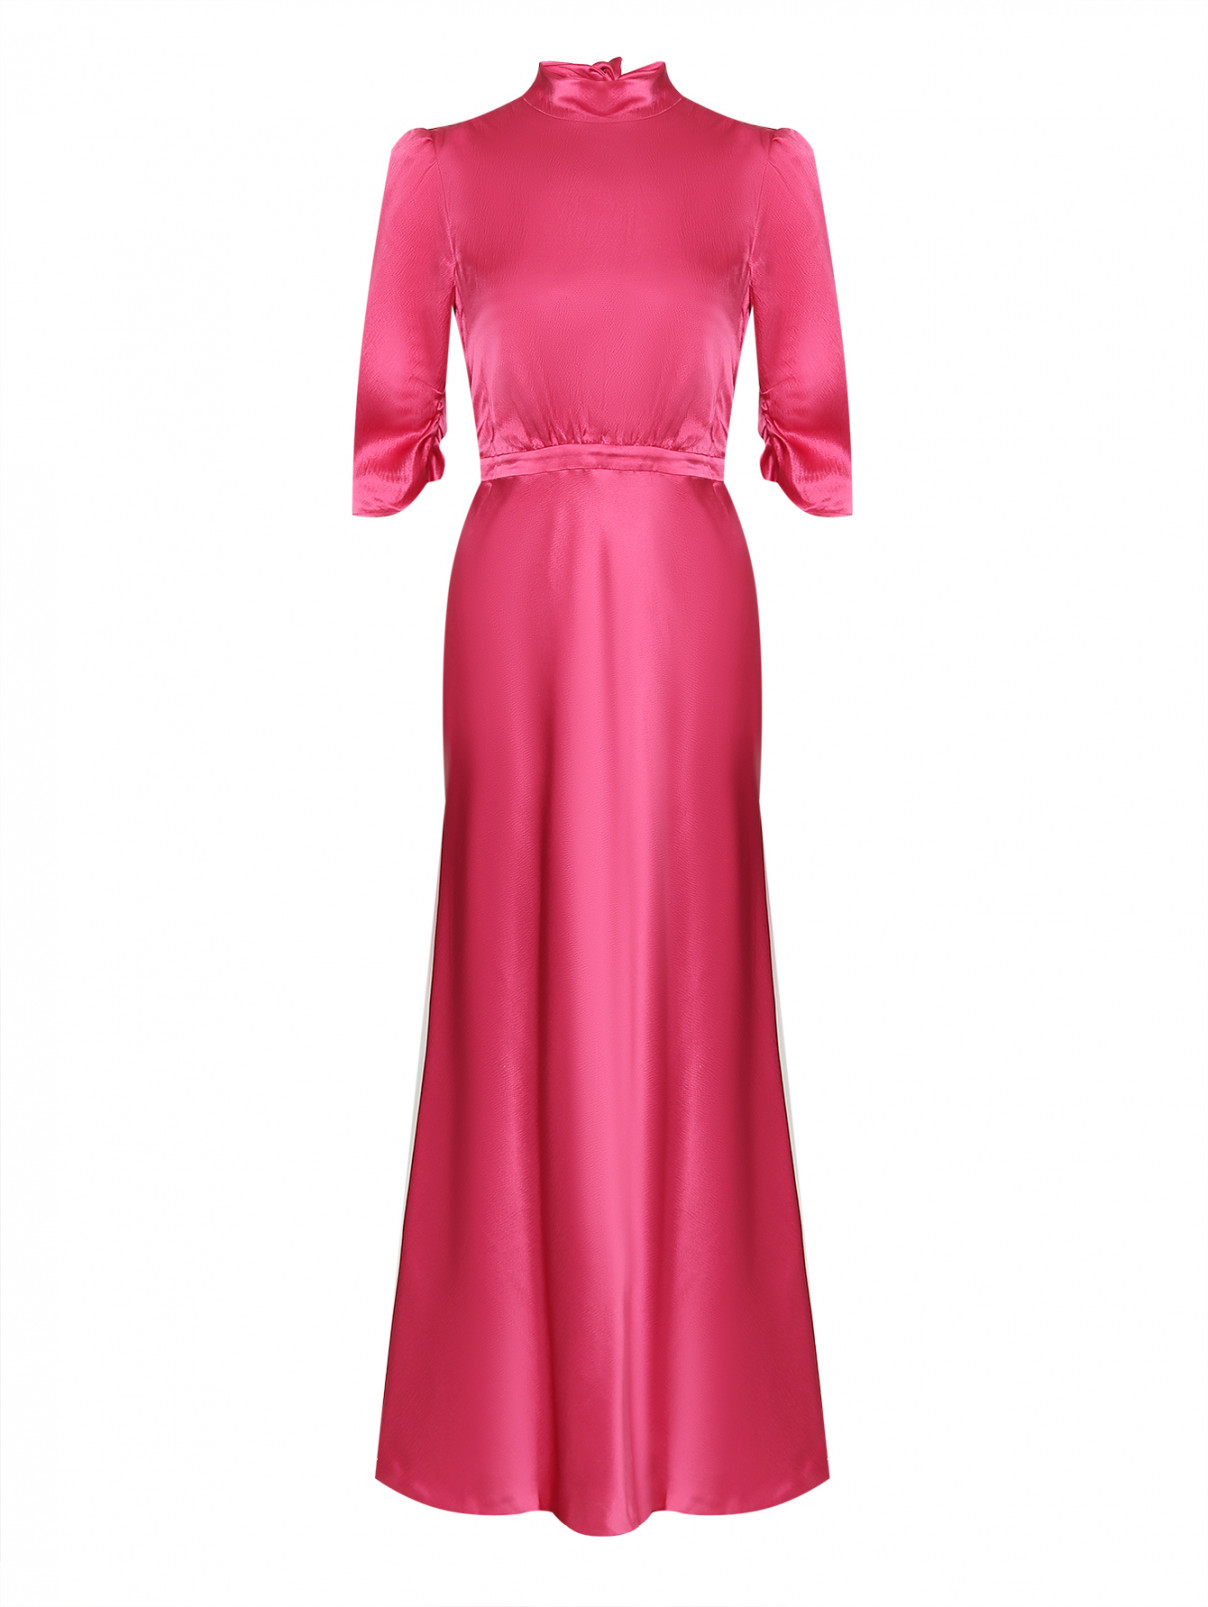 Шелковое платье с декоративным бантами Saloni  –  Общий вид  – Цвет:  Розовый